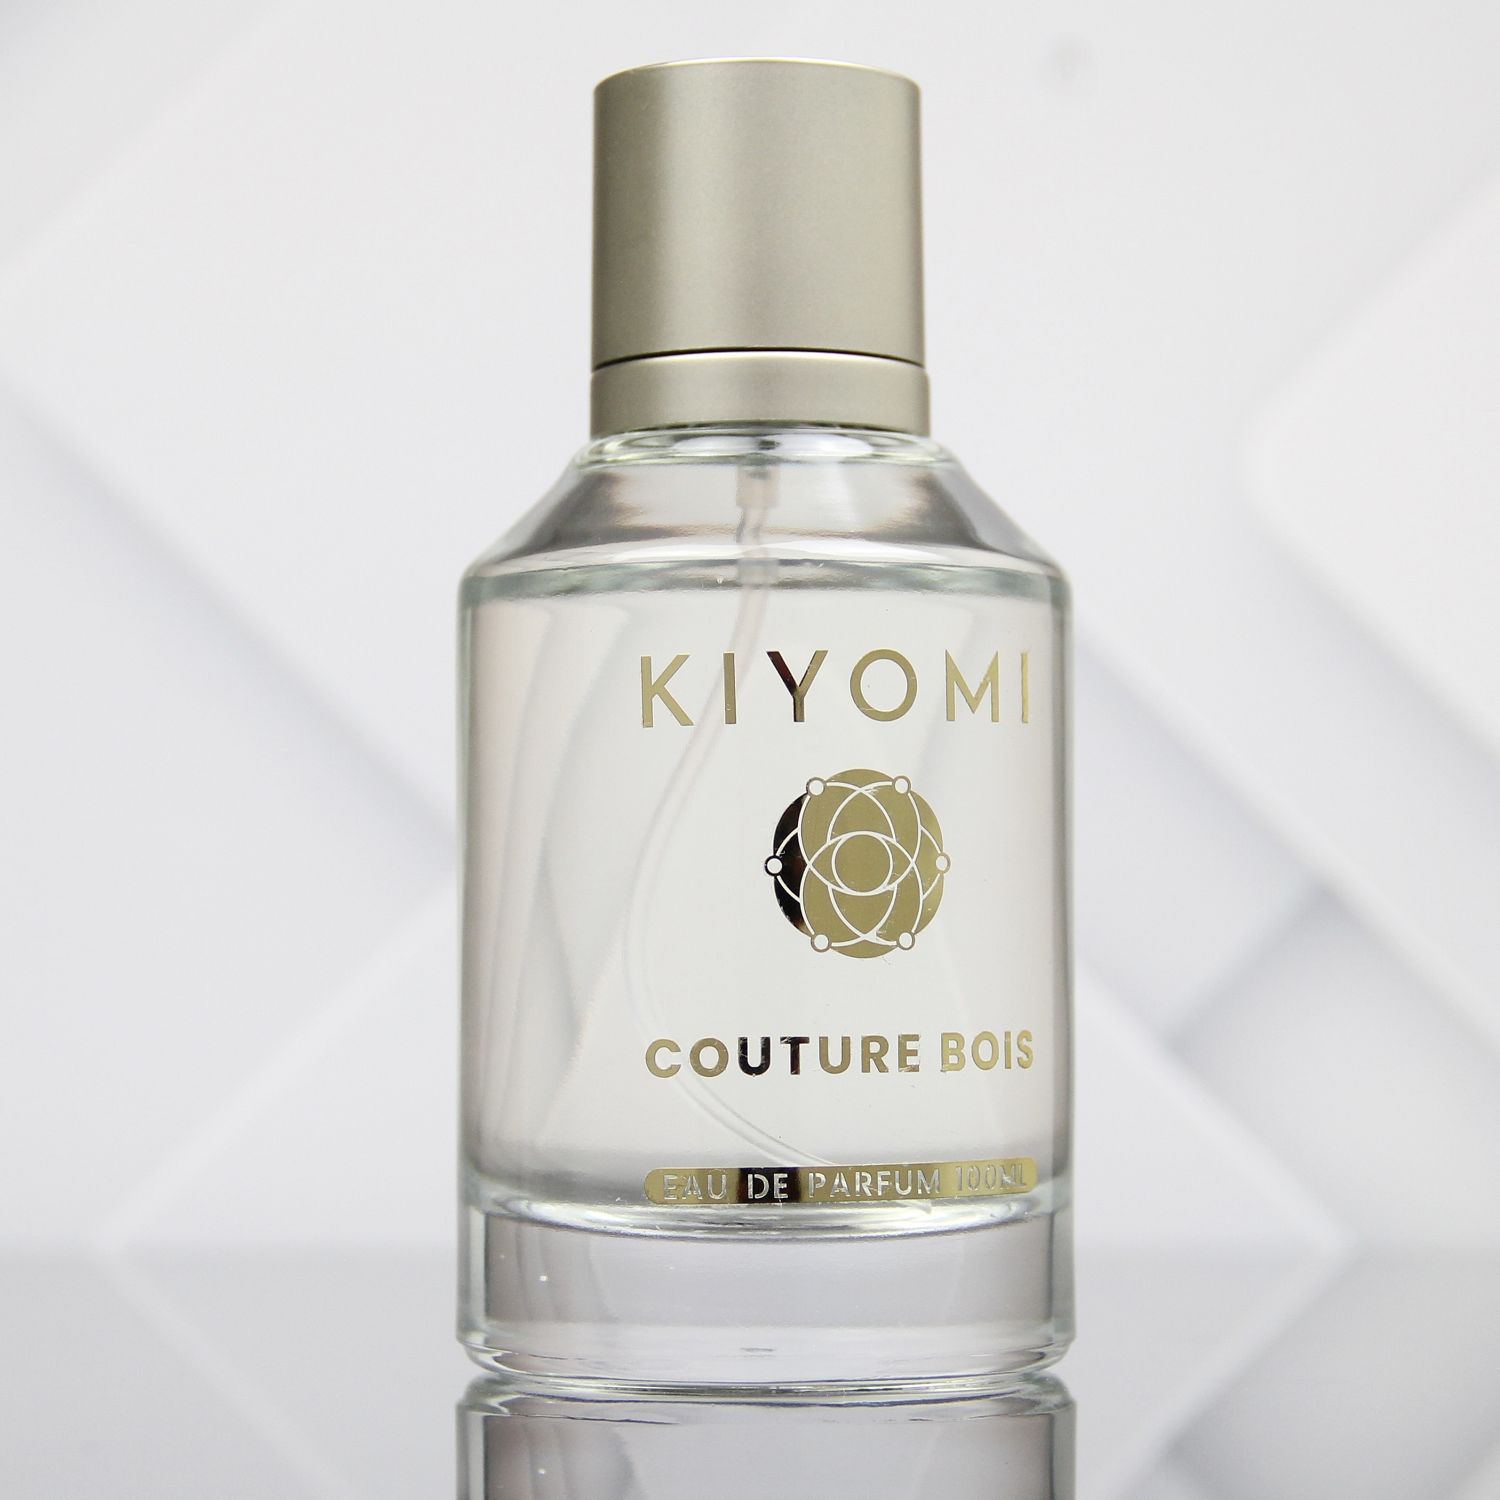 Kiyomi Couture Bois Masculino Eau de Parfum 100ml - imagem 1